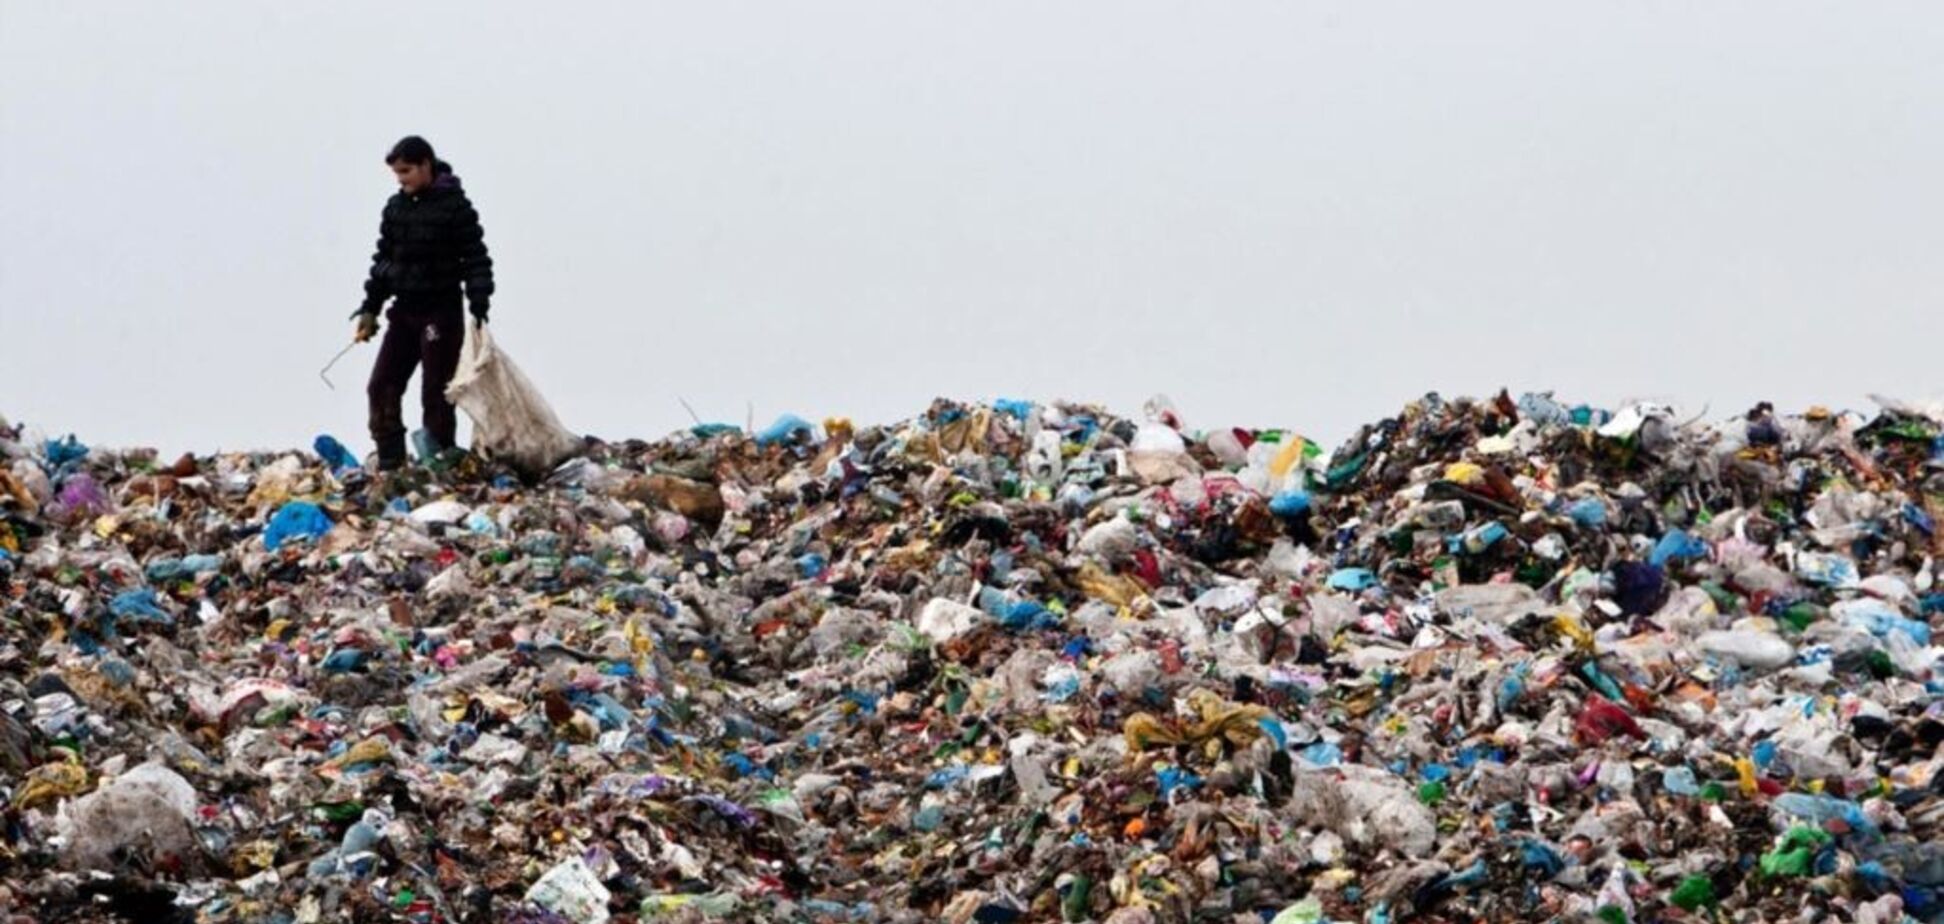 Україна потопає в смітті, вирішити проблему можуть заводи з переробки відходів,  – Абрамовський